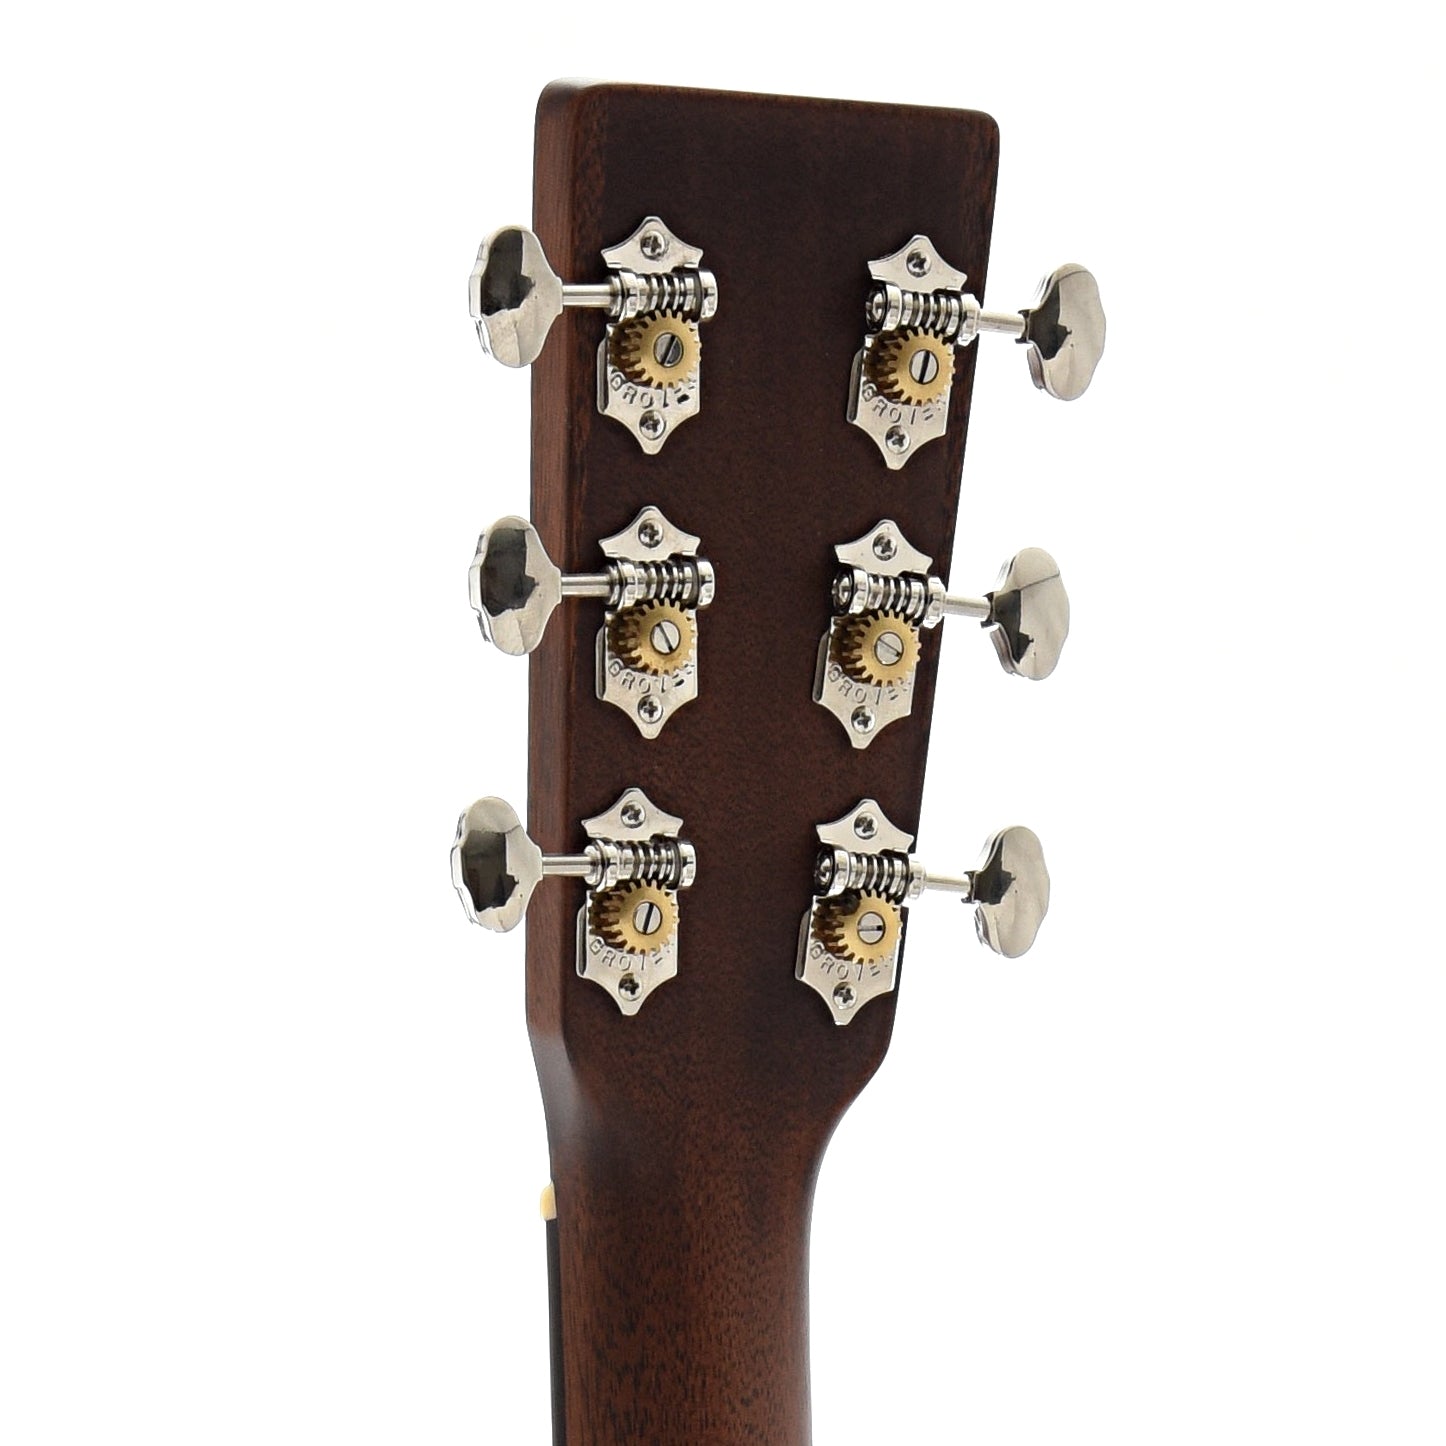 Back Headstock of Martin 00-15M Mahogany Guitar